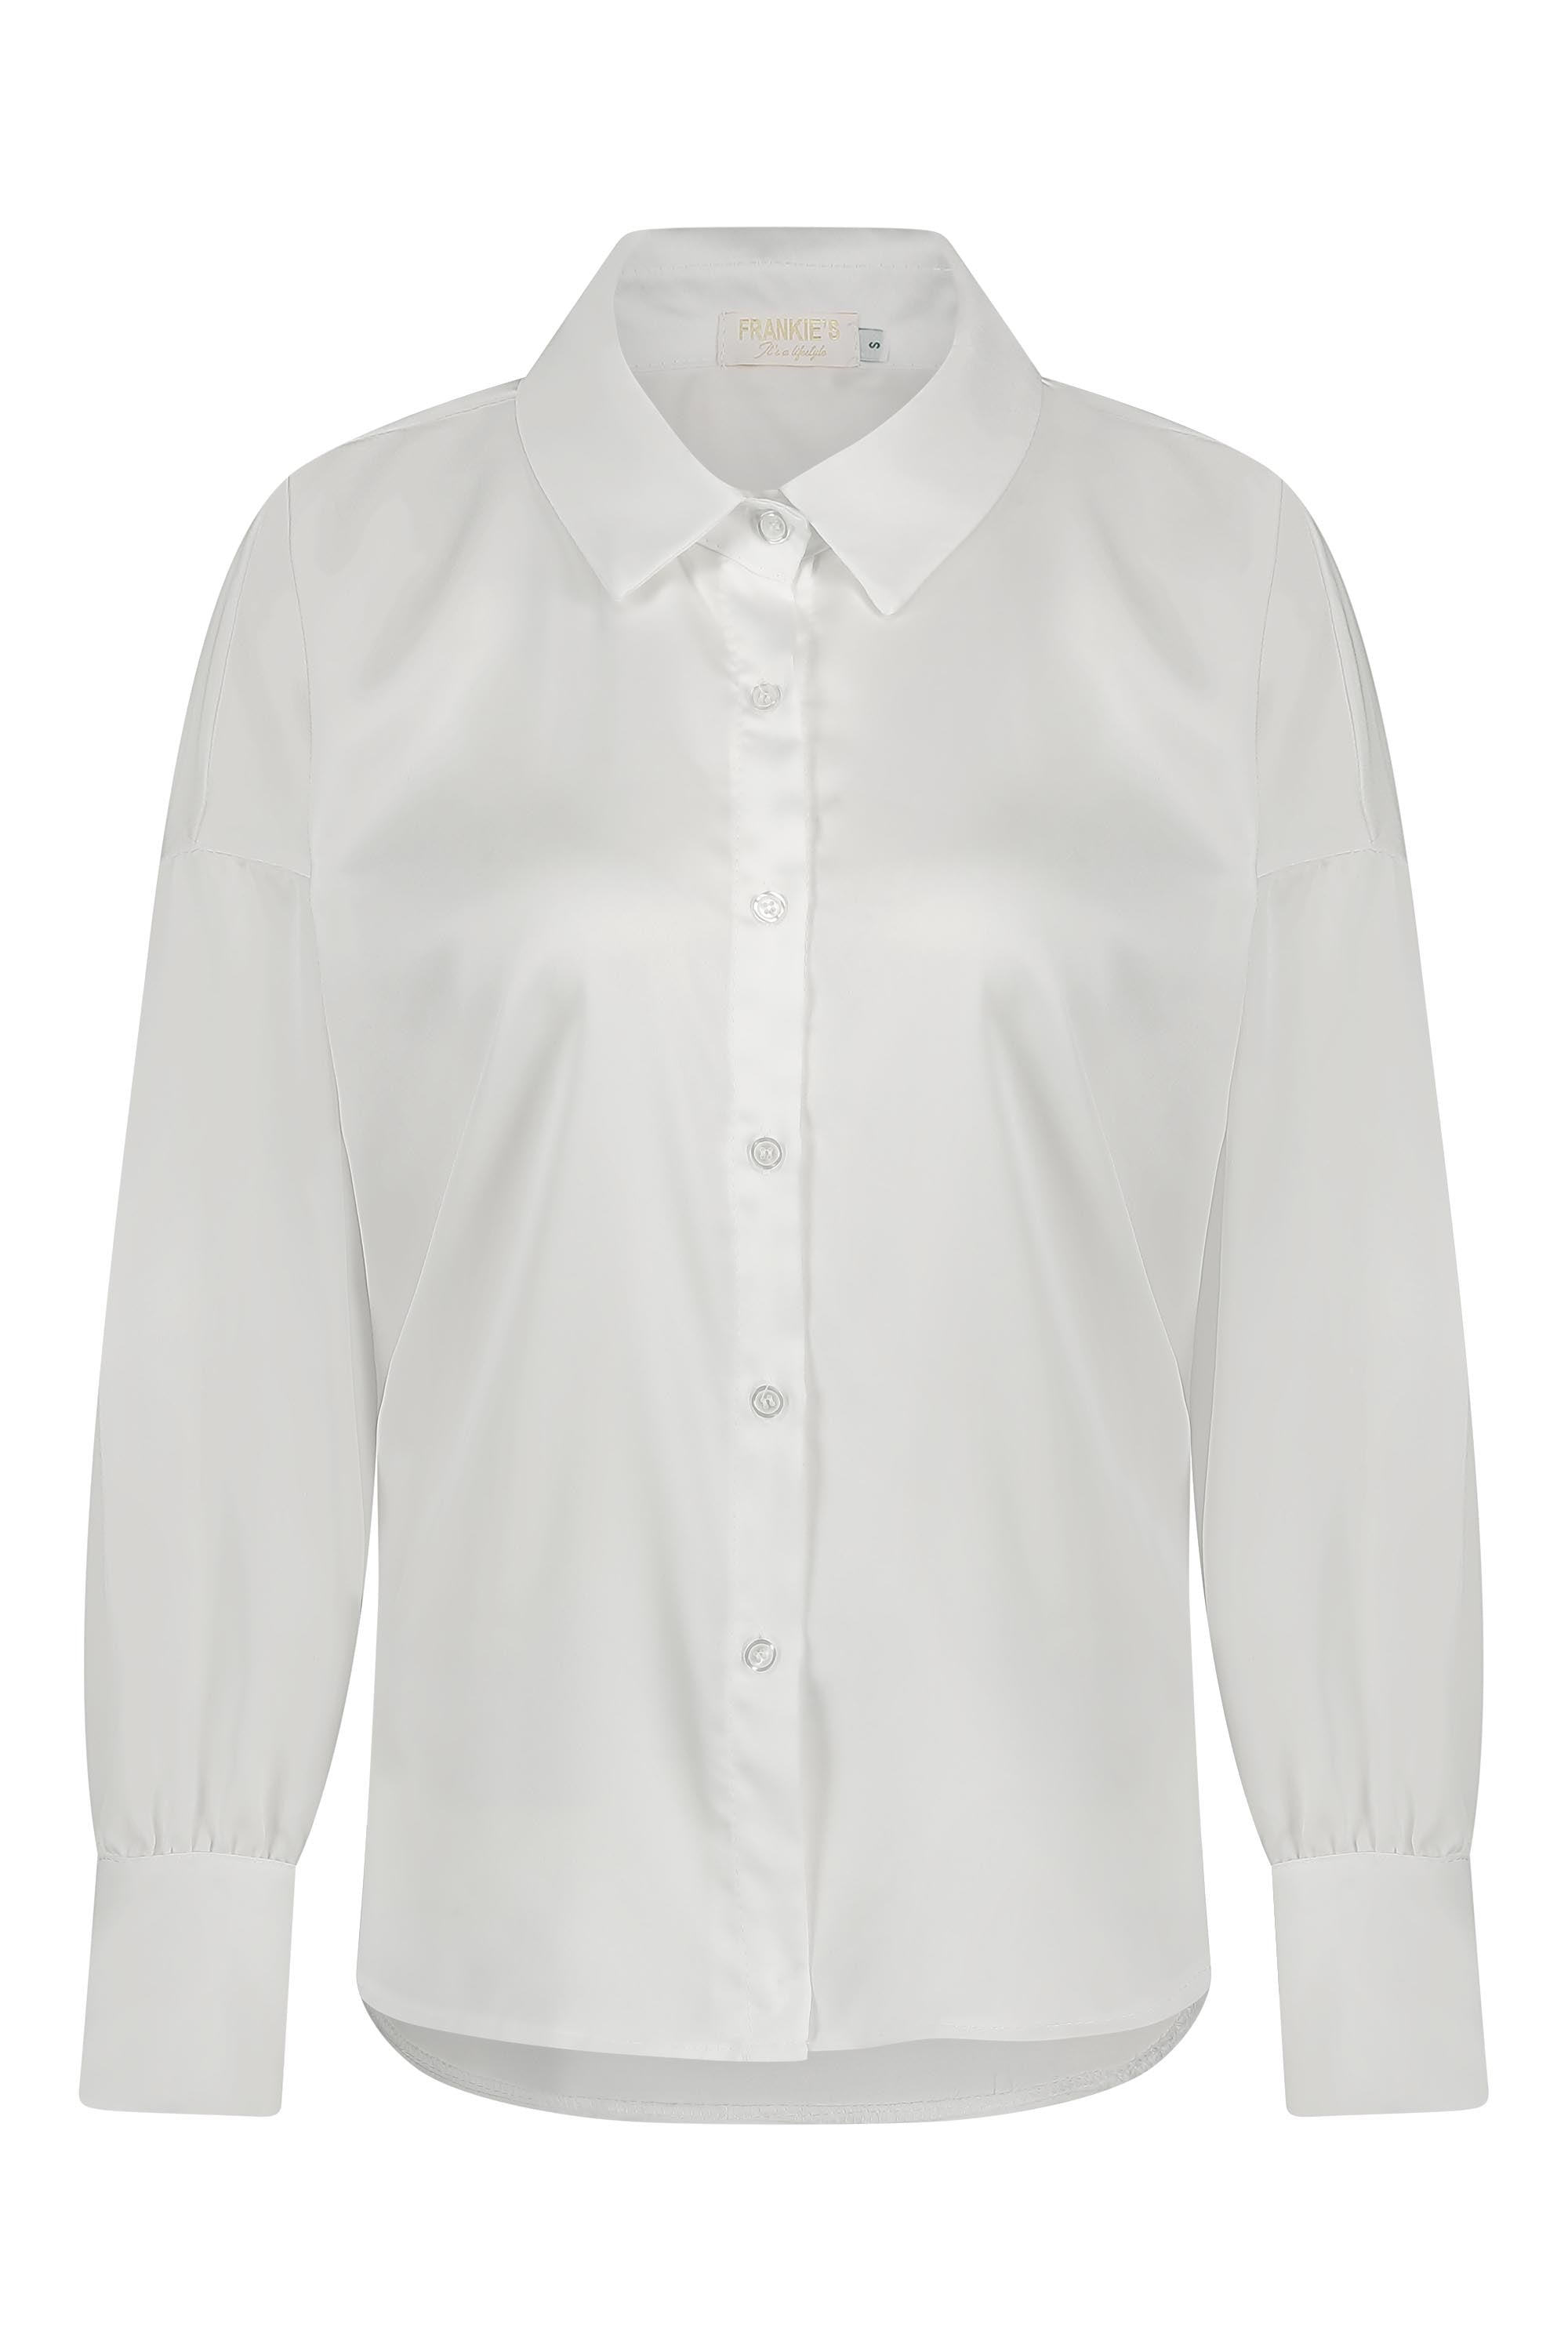 Satin blouse white